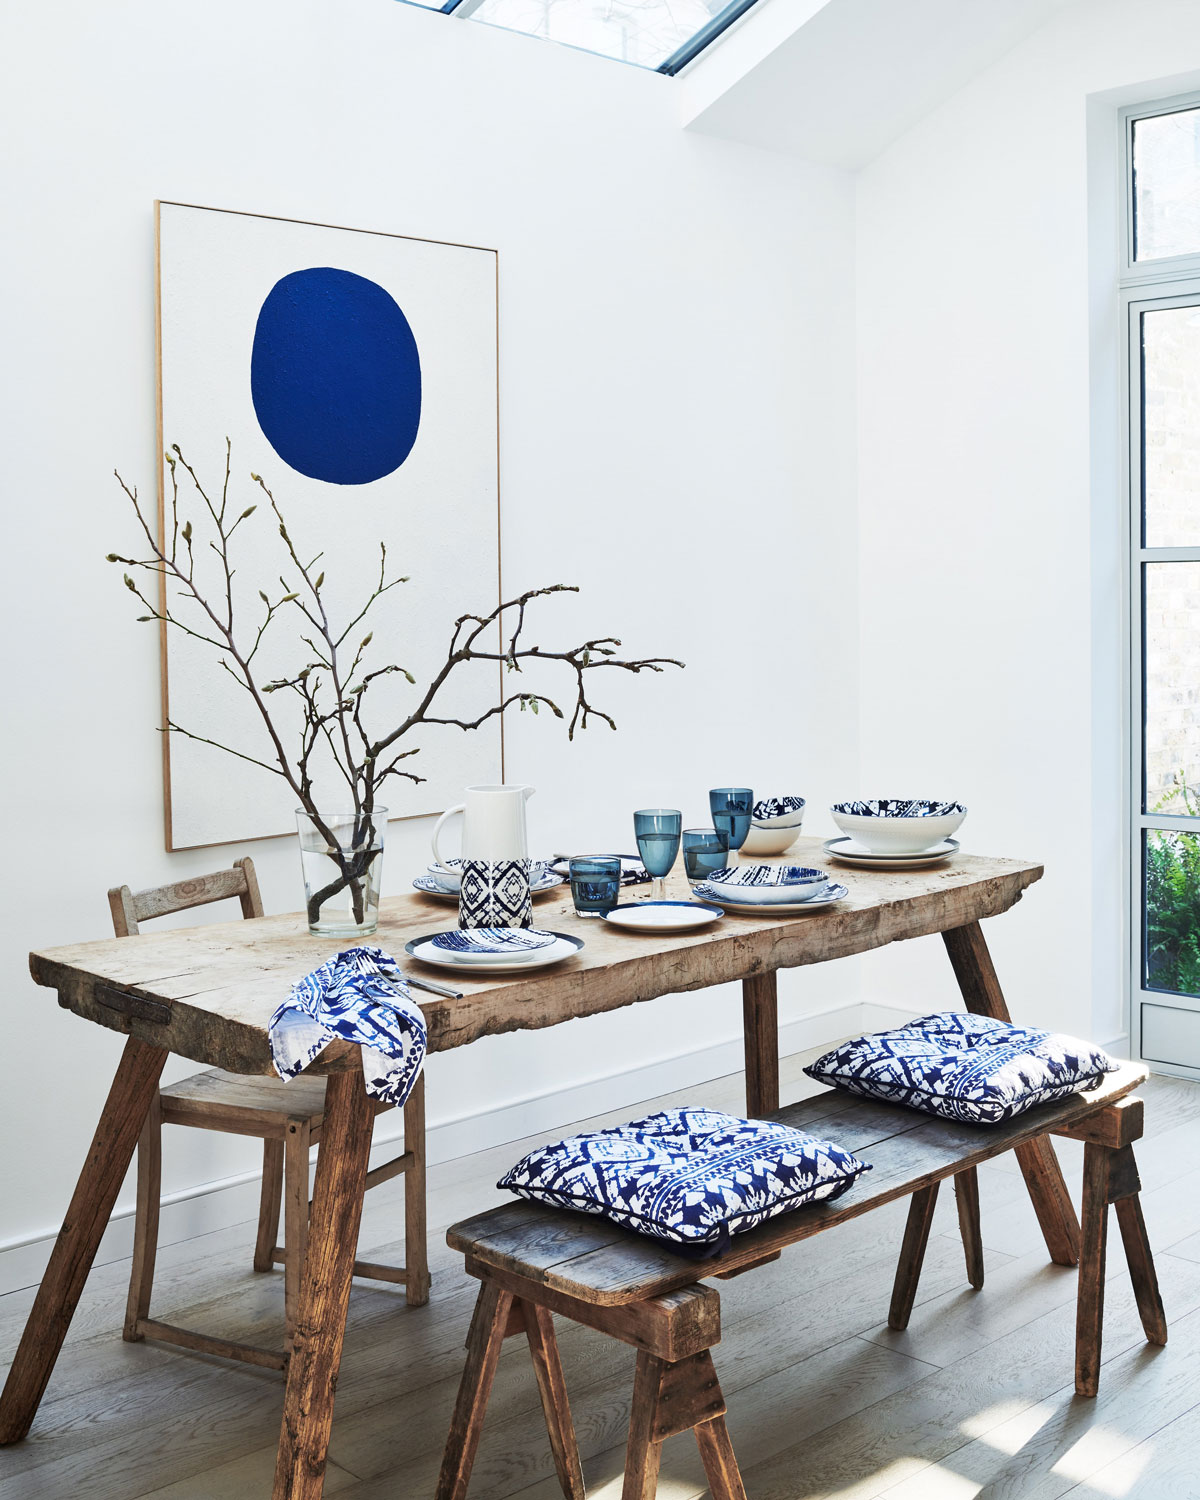 Rustikálny drevený stôl s lavicou s modrými podsedákmi a obrazom s modrým kruhom